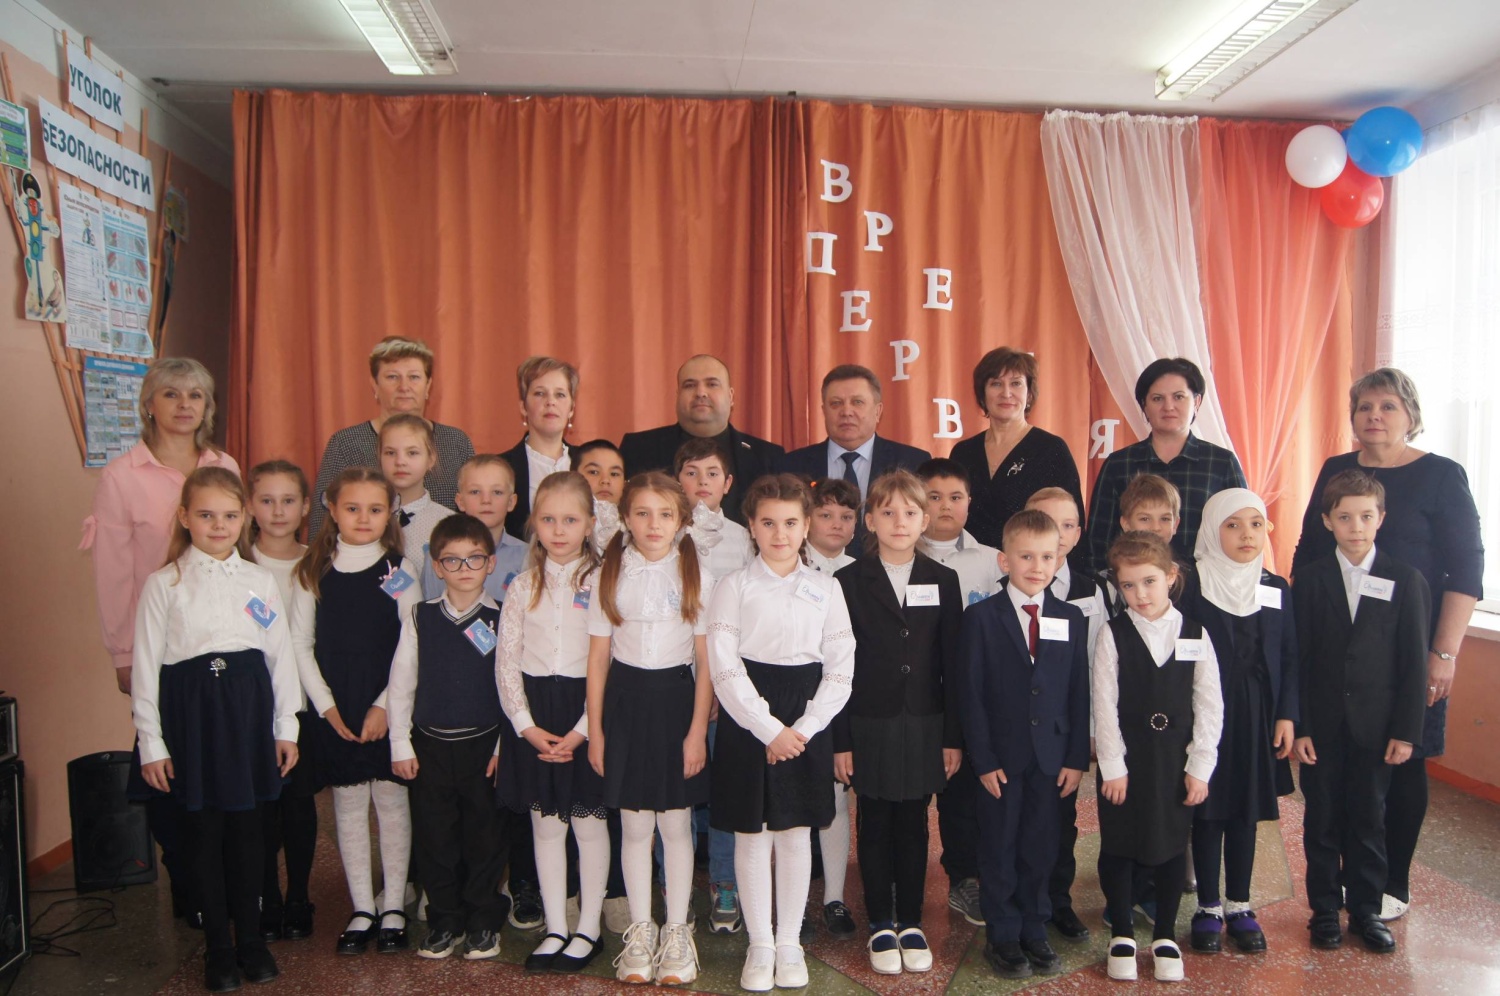 14 февраля 2023 года в школе им.Н.М. Новикова с. Плесс Мокшанского района состоялась торжественная линейка, посвящённая открытию первичного отделения российского движения детей и молодёжи «Движение Первых».